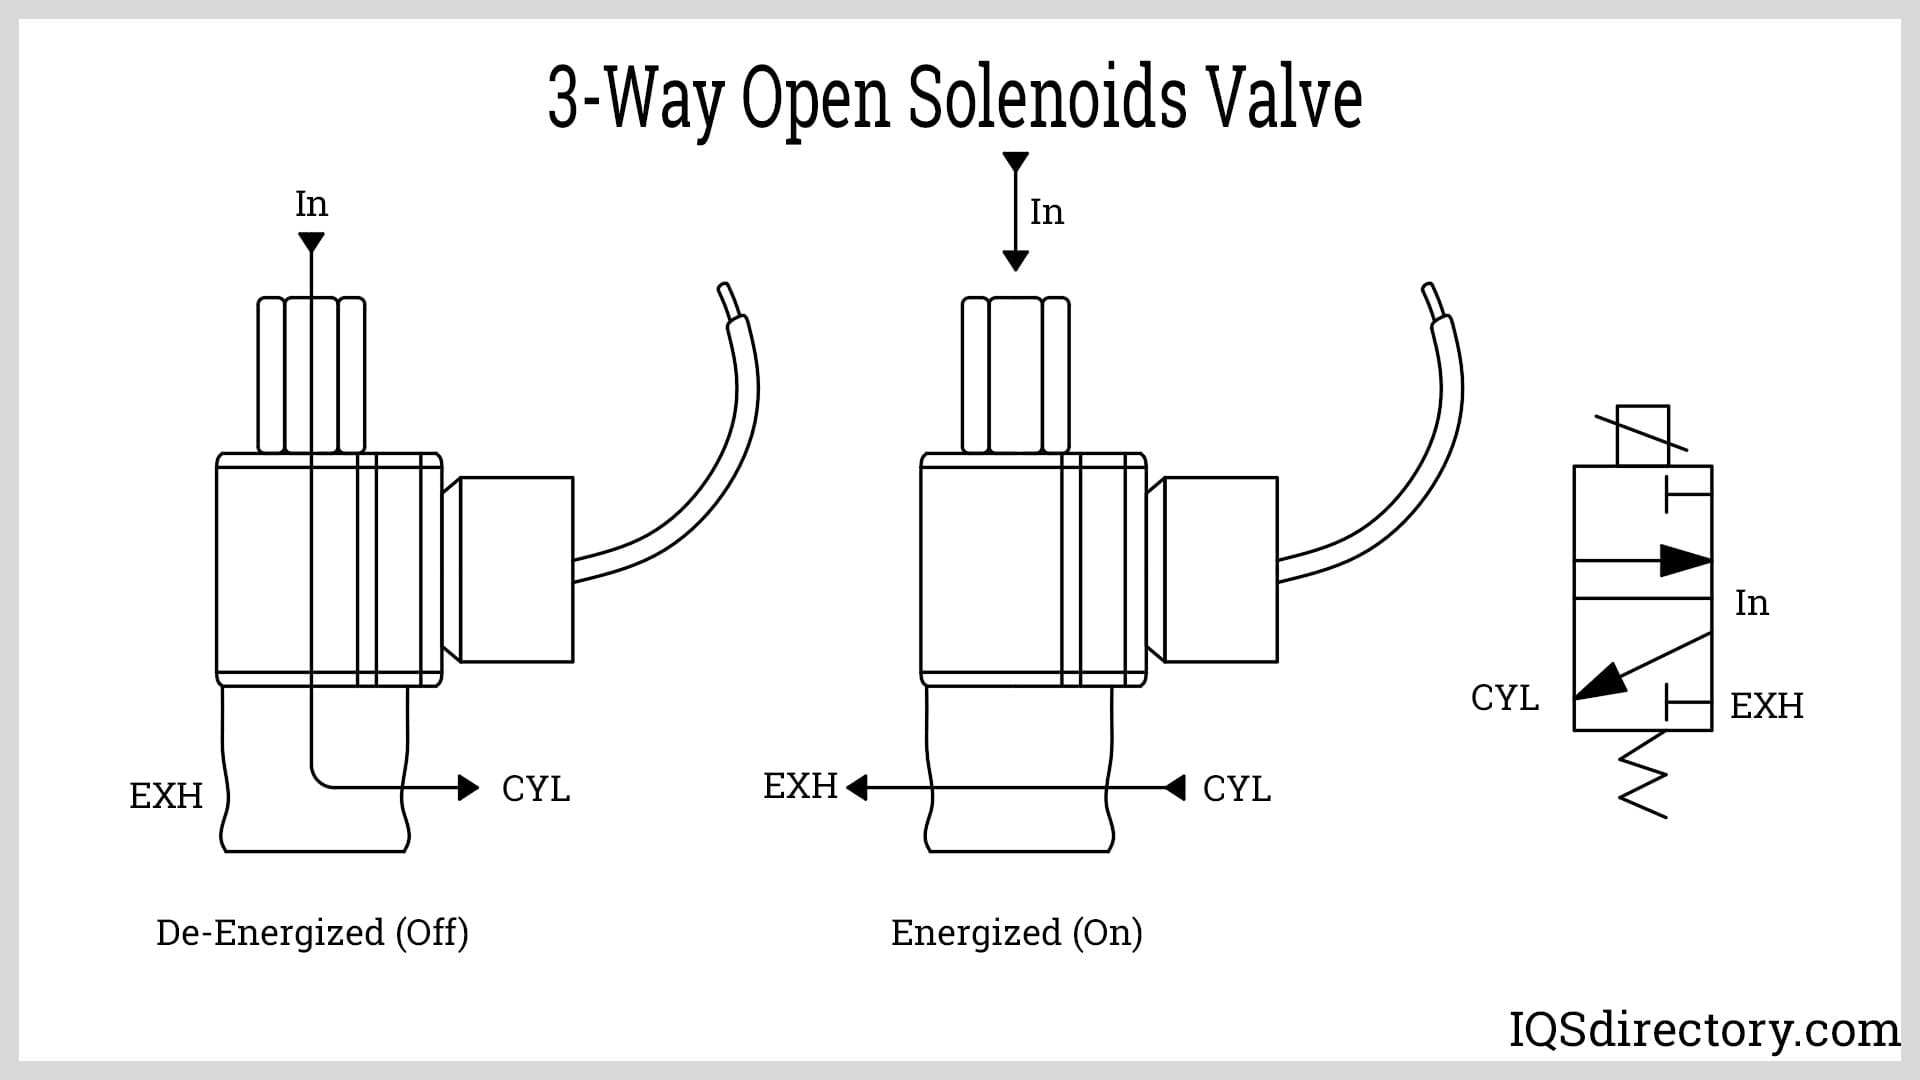 3-Way Open Solenoids Valve